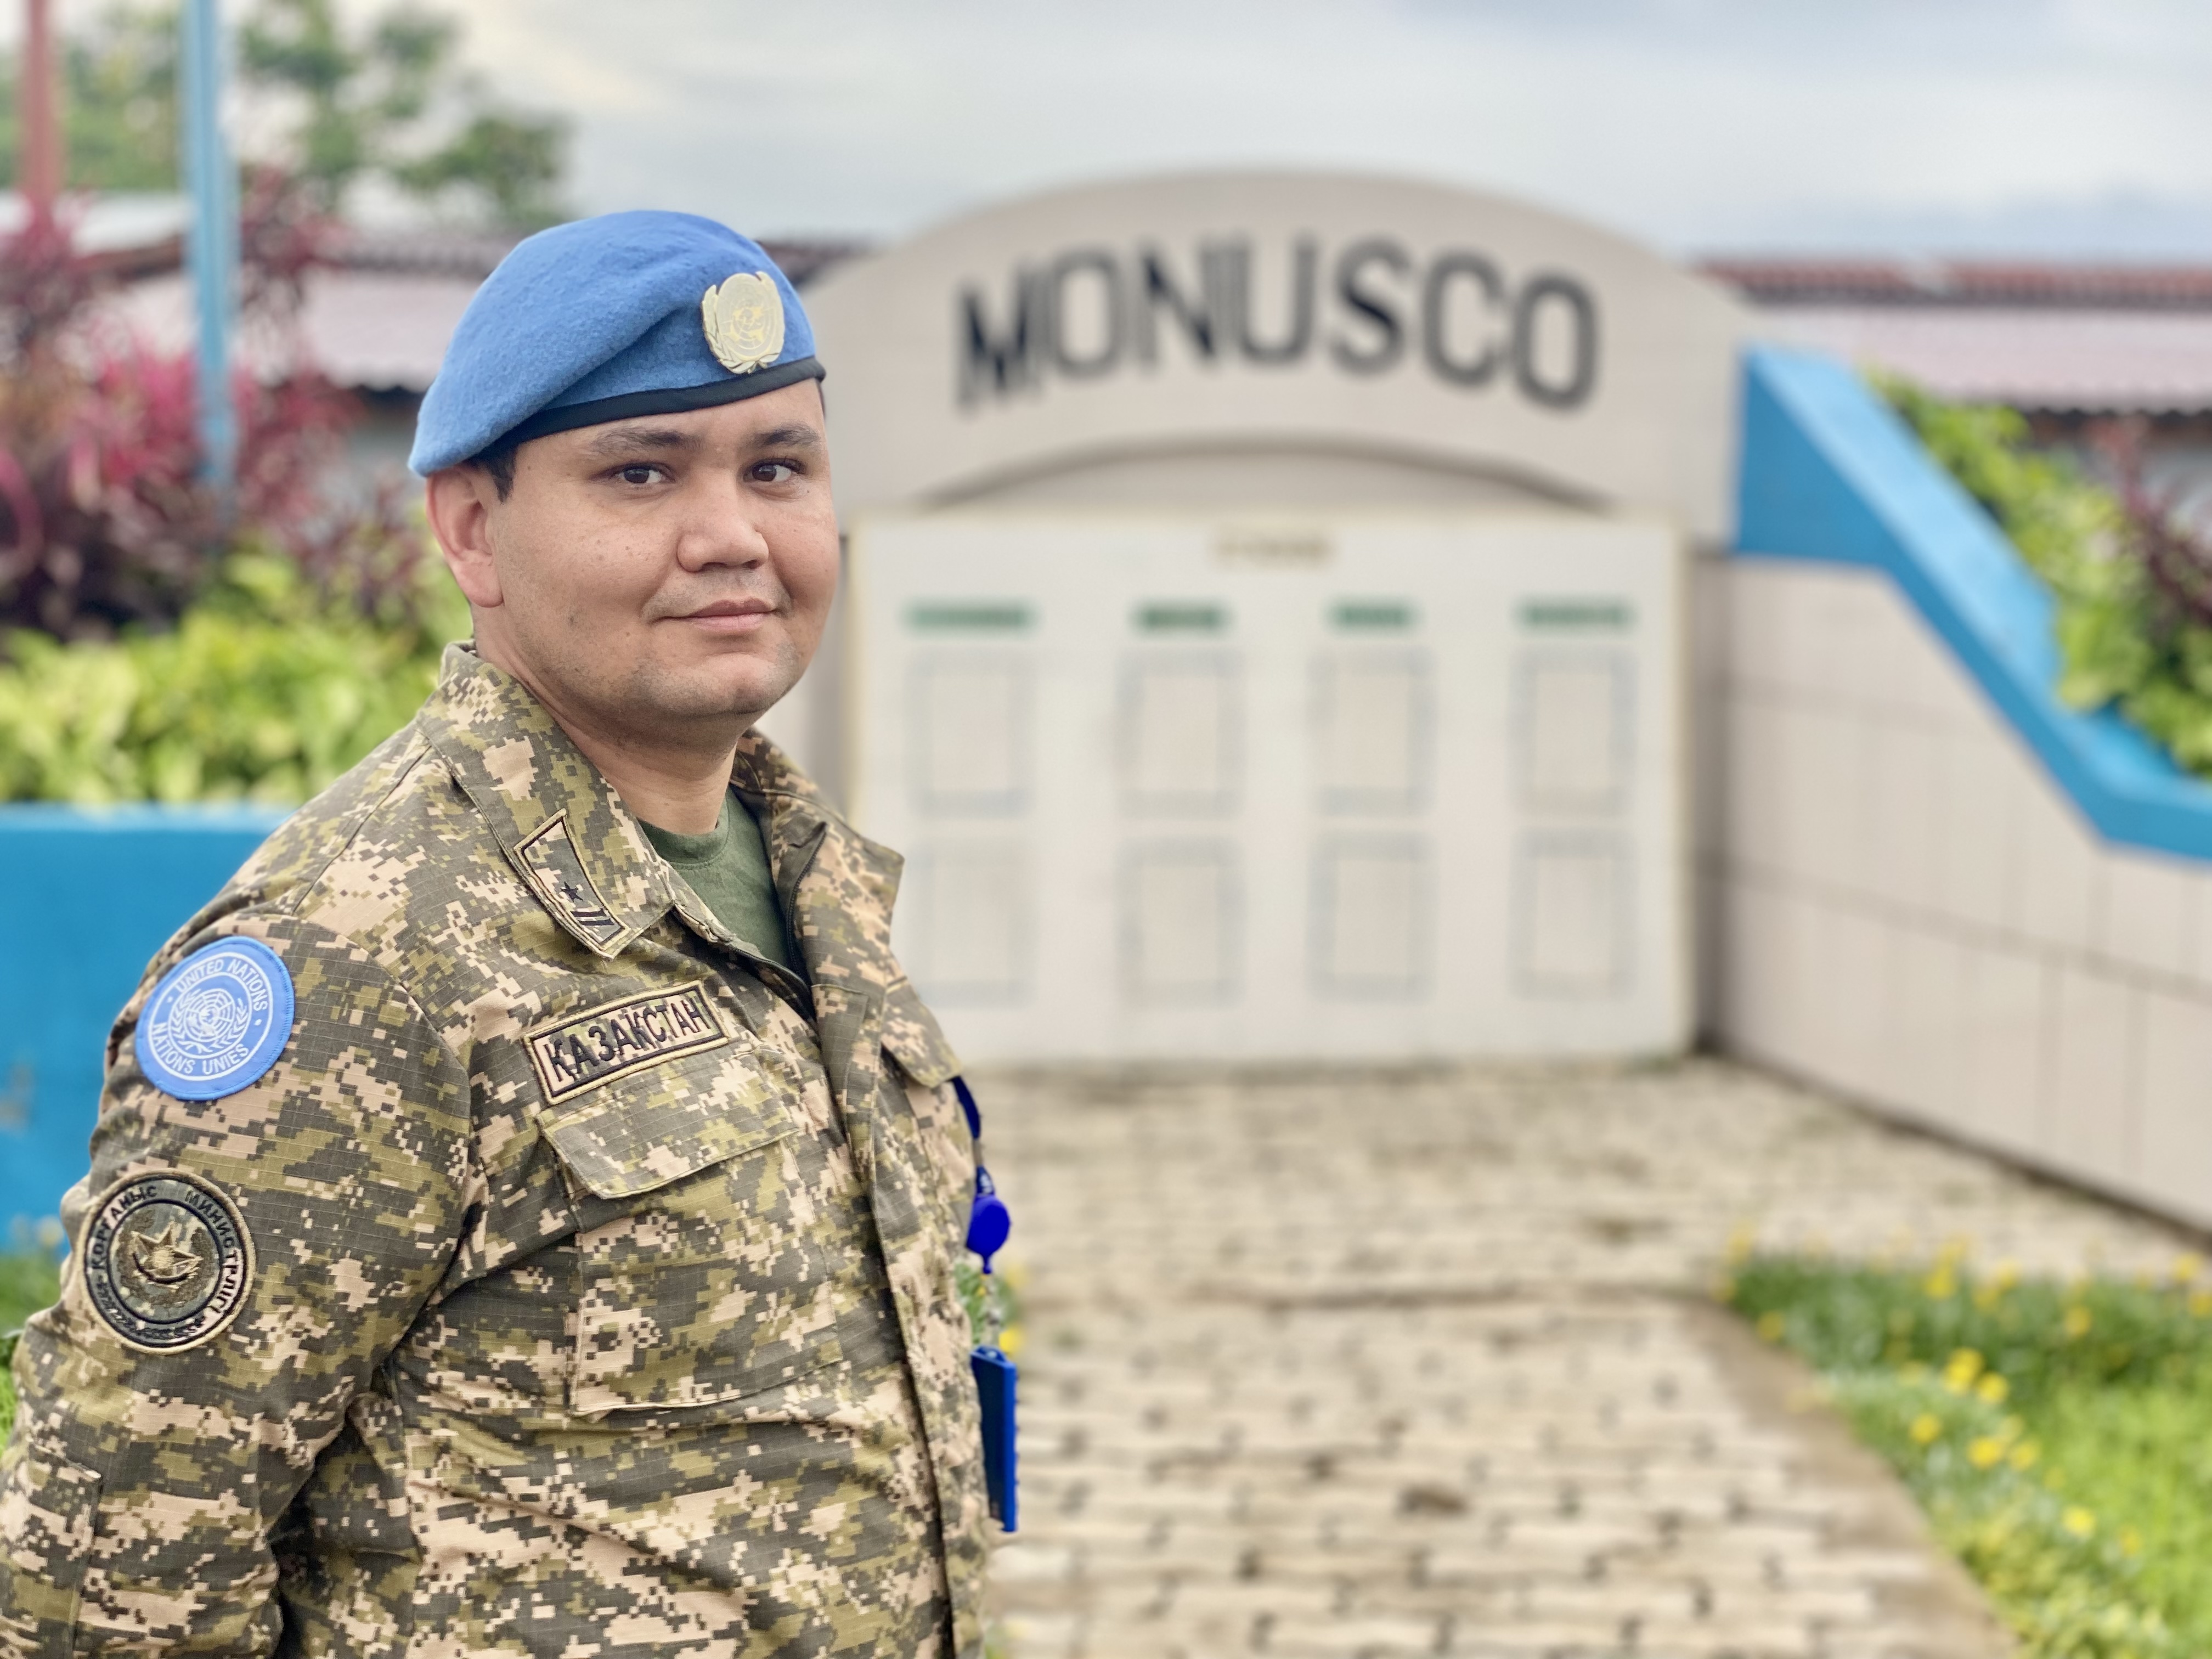 Впервые офицер Вооруженных сил Казахстана принимает участие в миротворческой миссии ООН в Конго